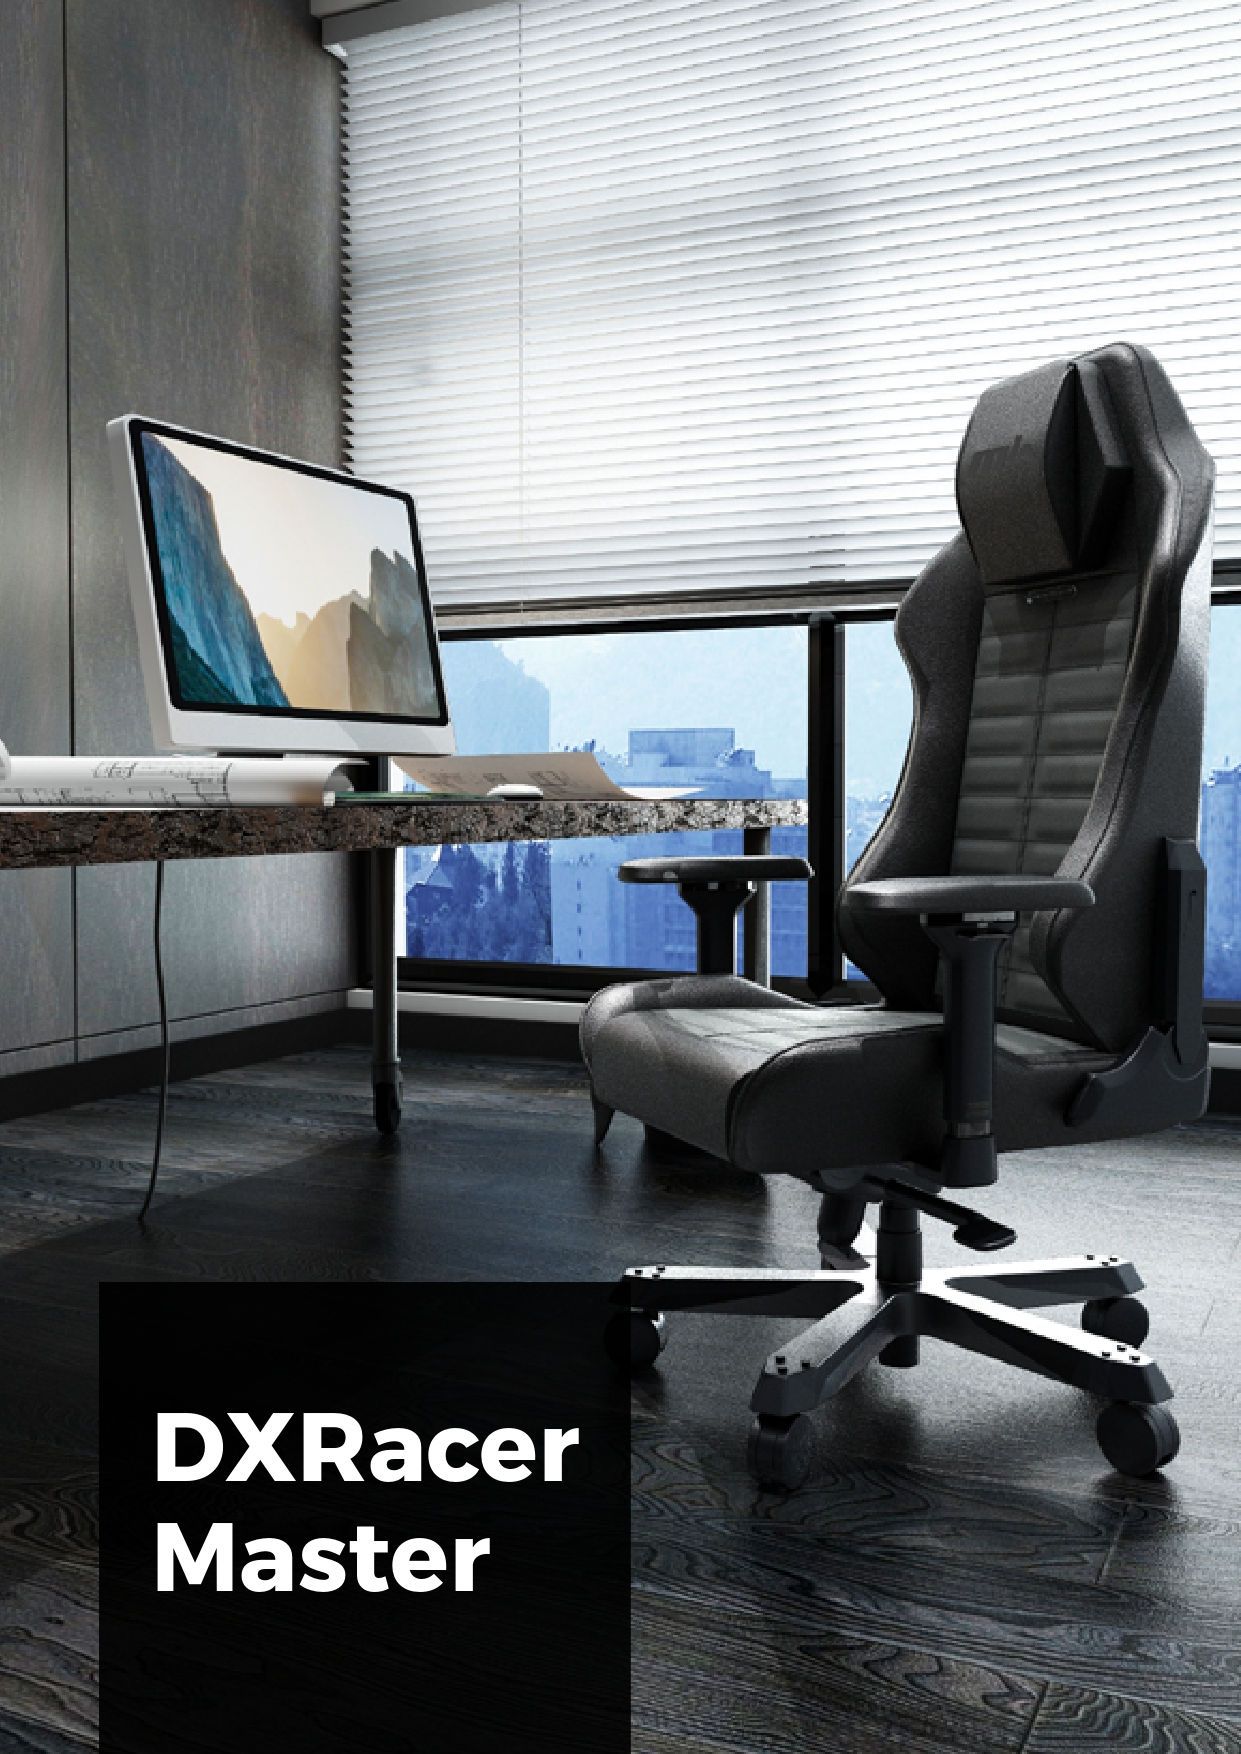 Крісло для геймерів DXRACER MASTER Max DMC-I233S-E-A2 зелене: купити в меблевому магазині МебельОК